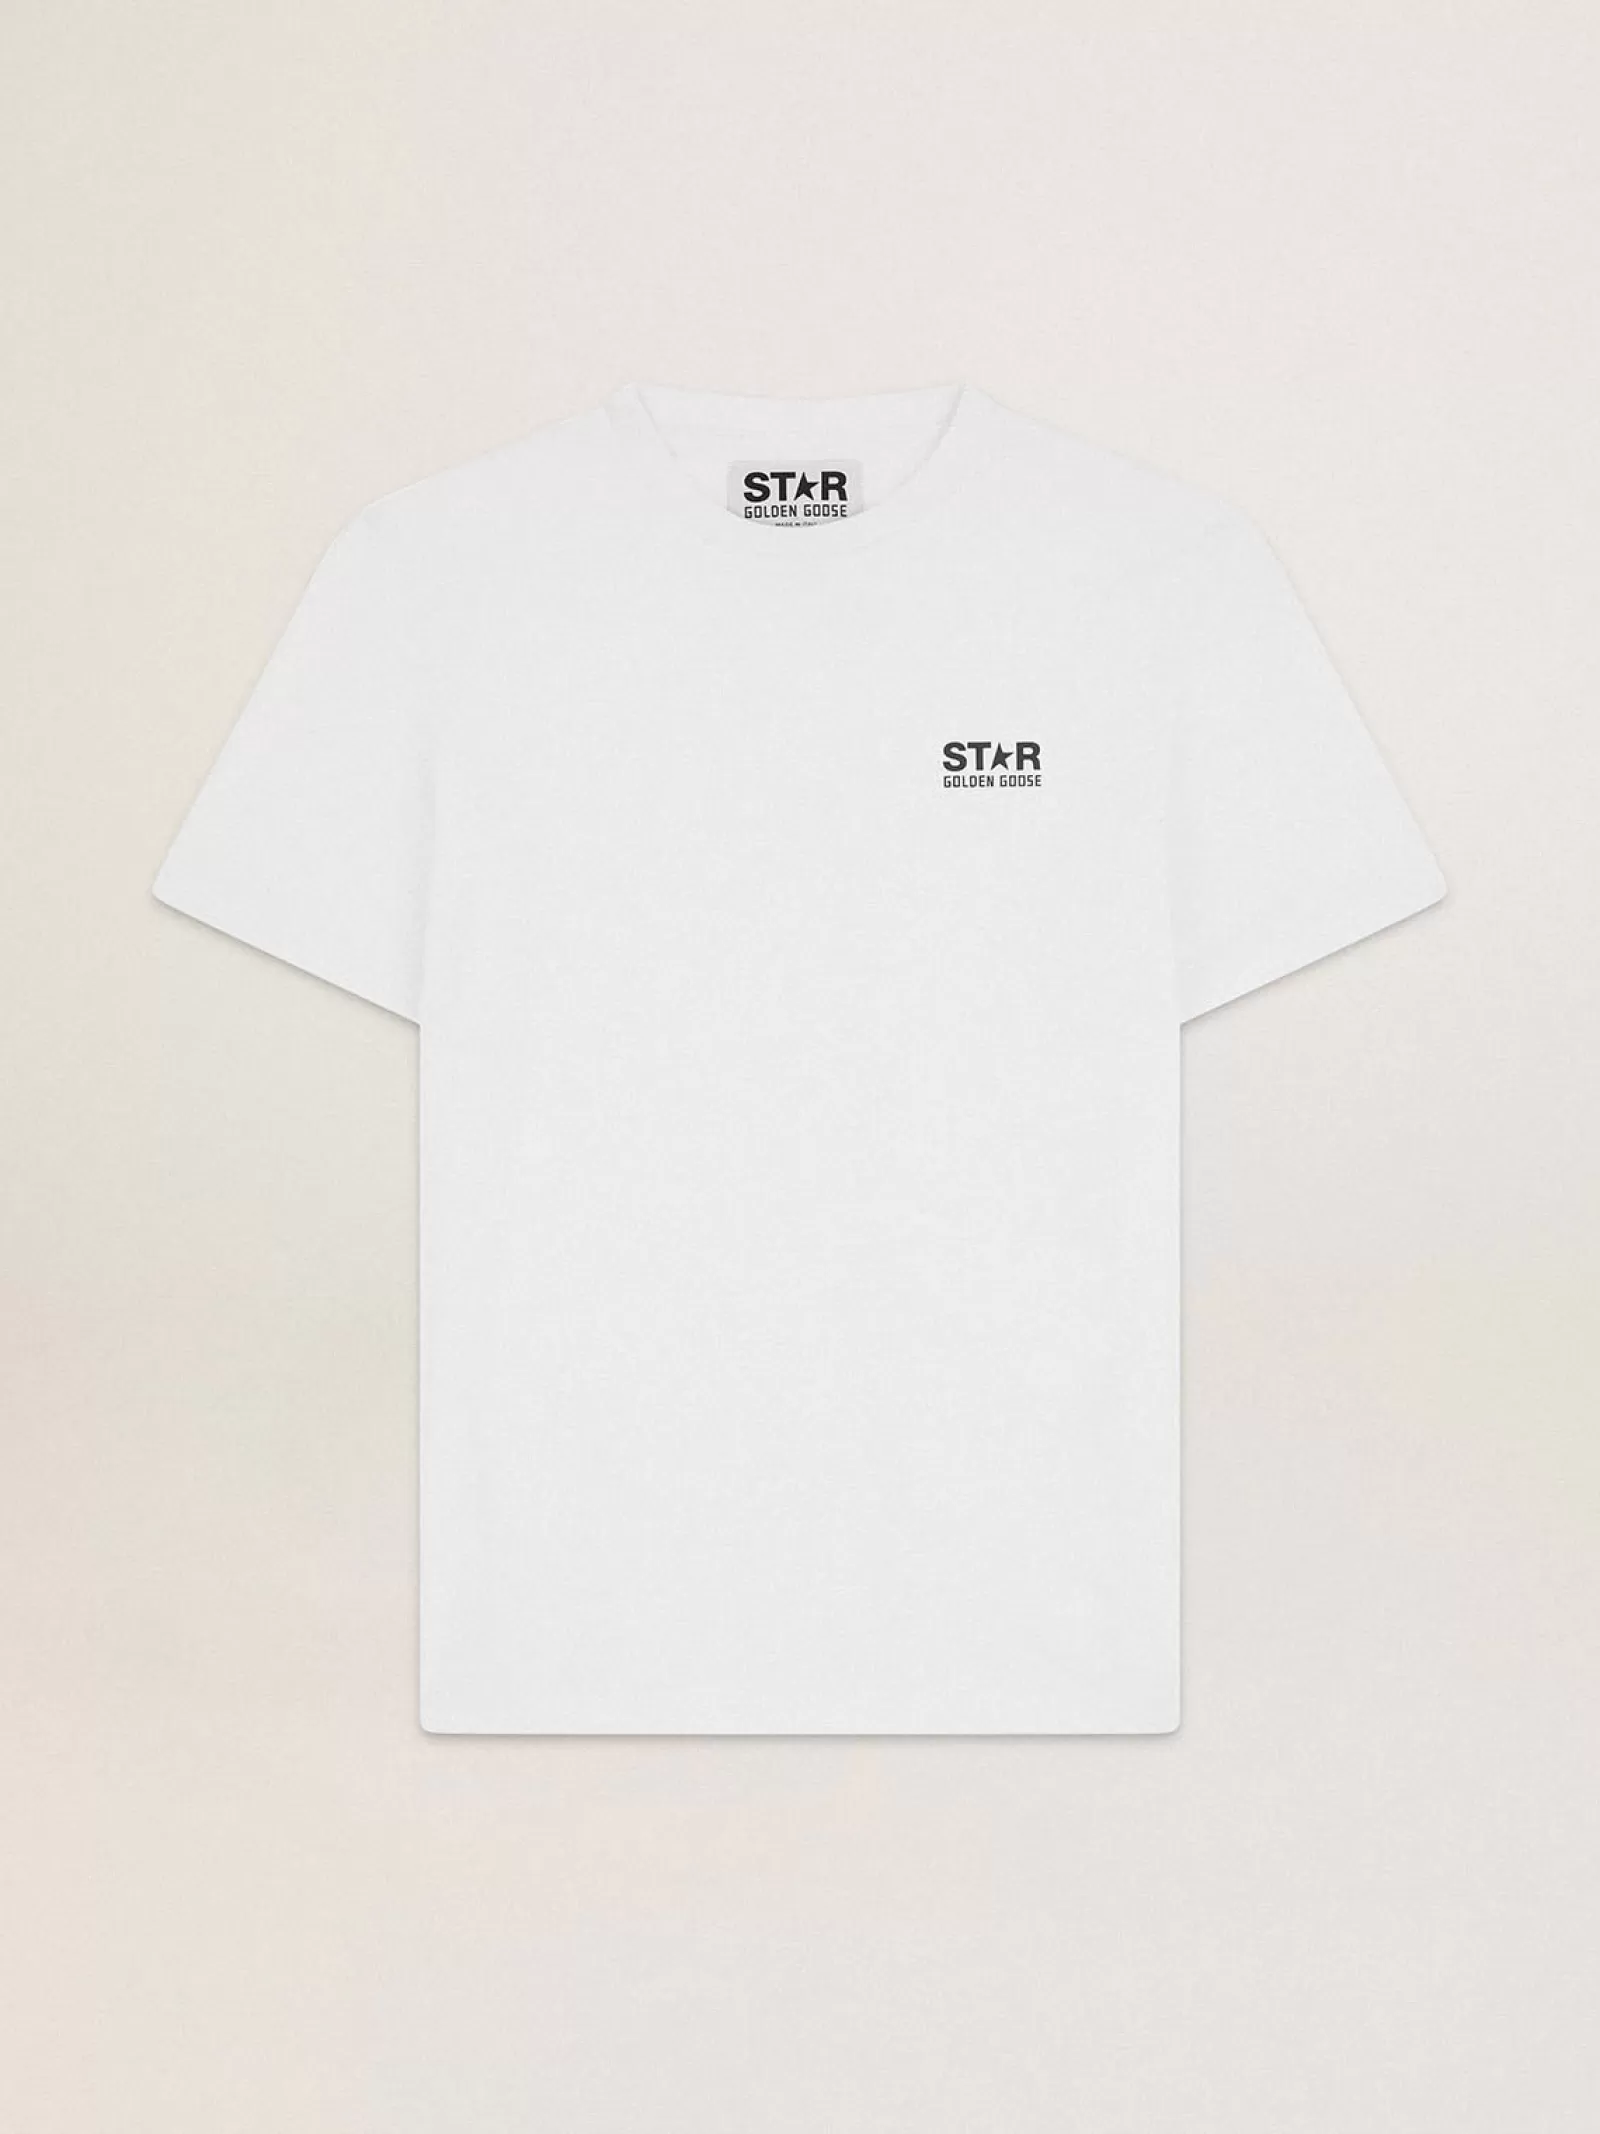 T-shirt blanc collection Star avec logo et étoile noirs contrastés | Golden Goose Cheap